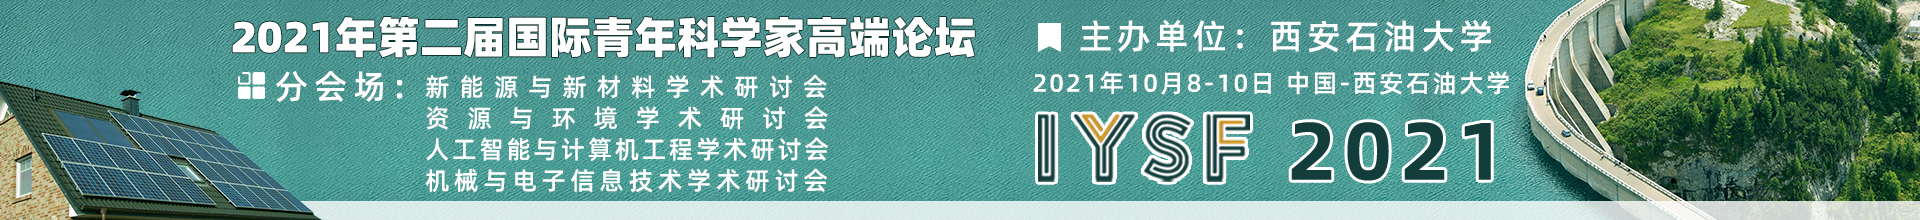 10月西安-IYSF 2021-学术会议云-何霞丽-20210518.jpg